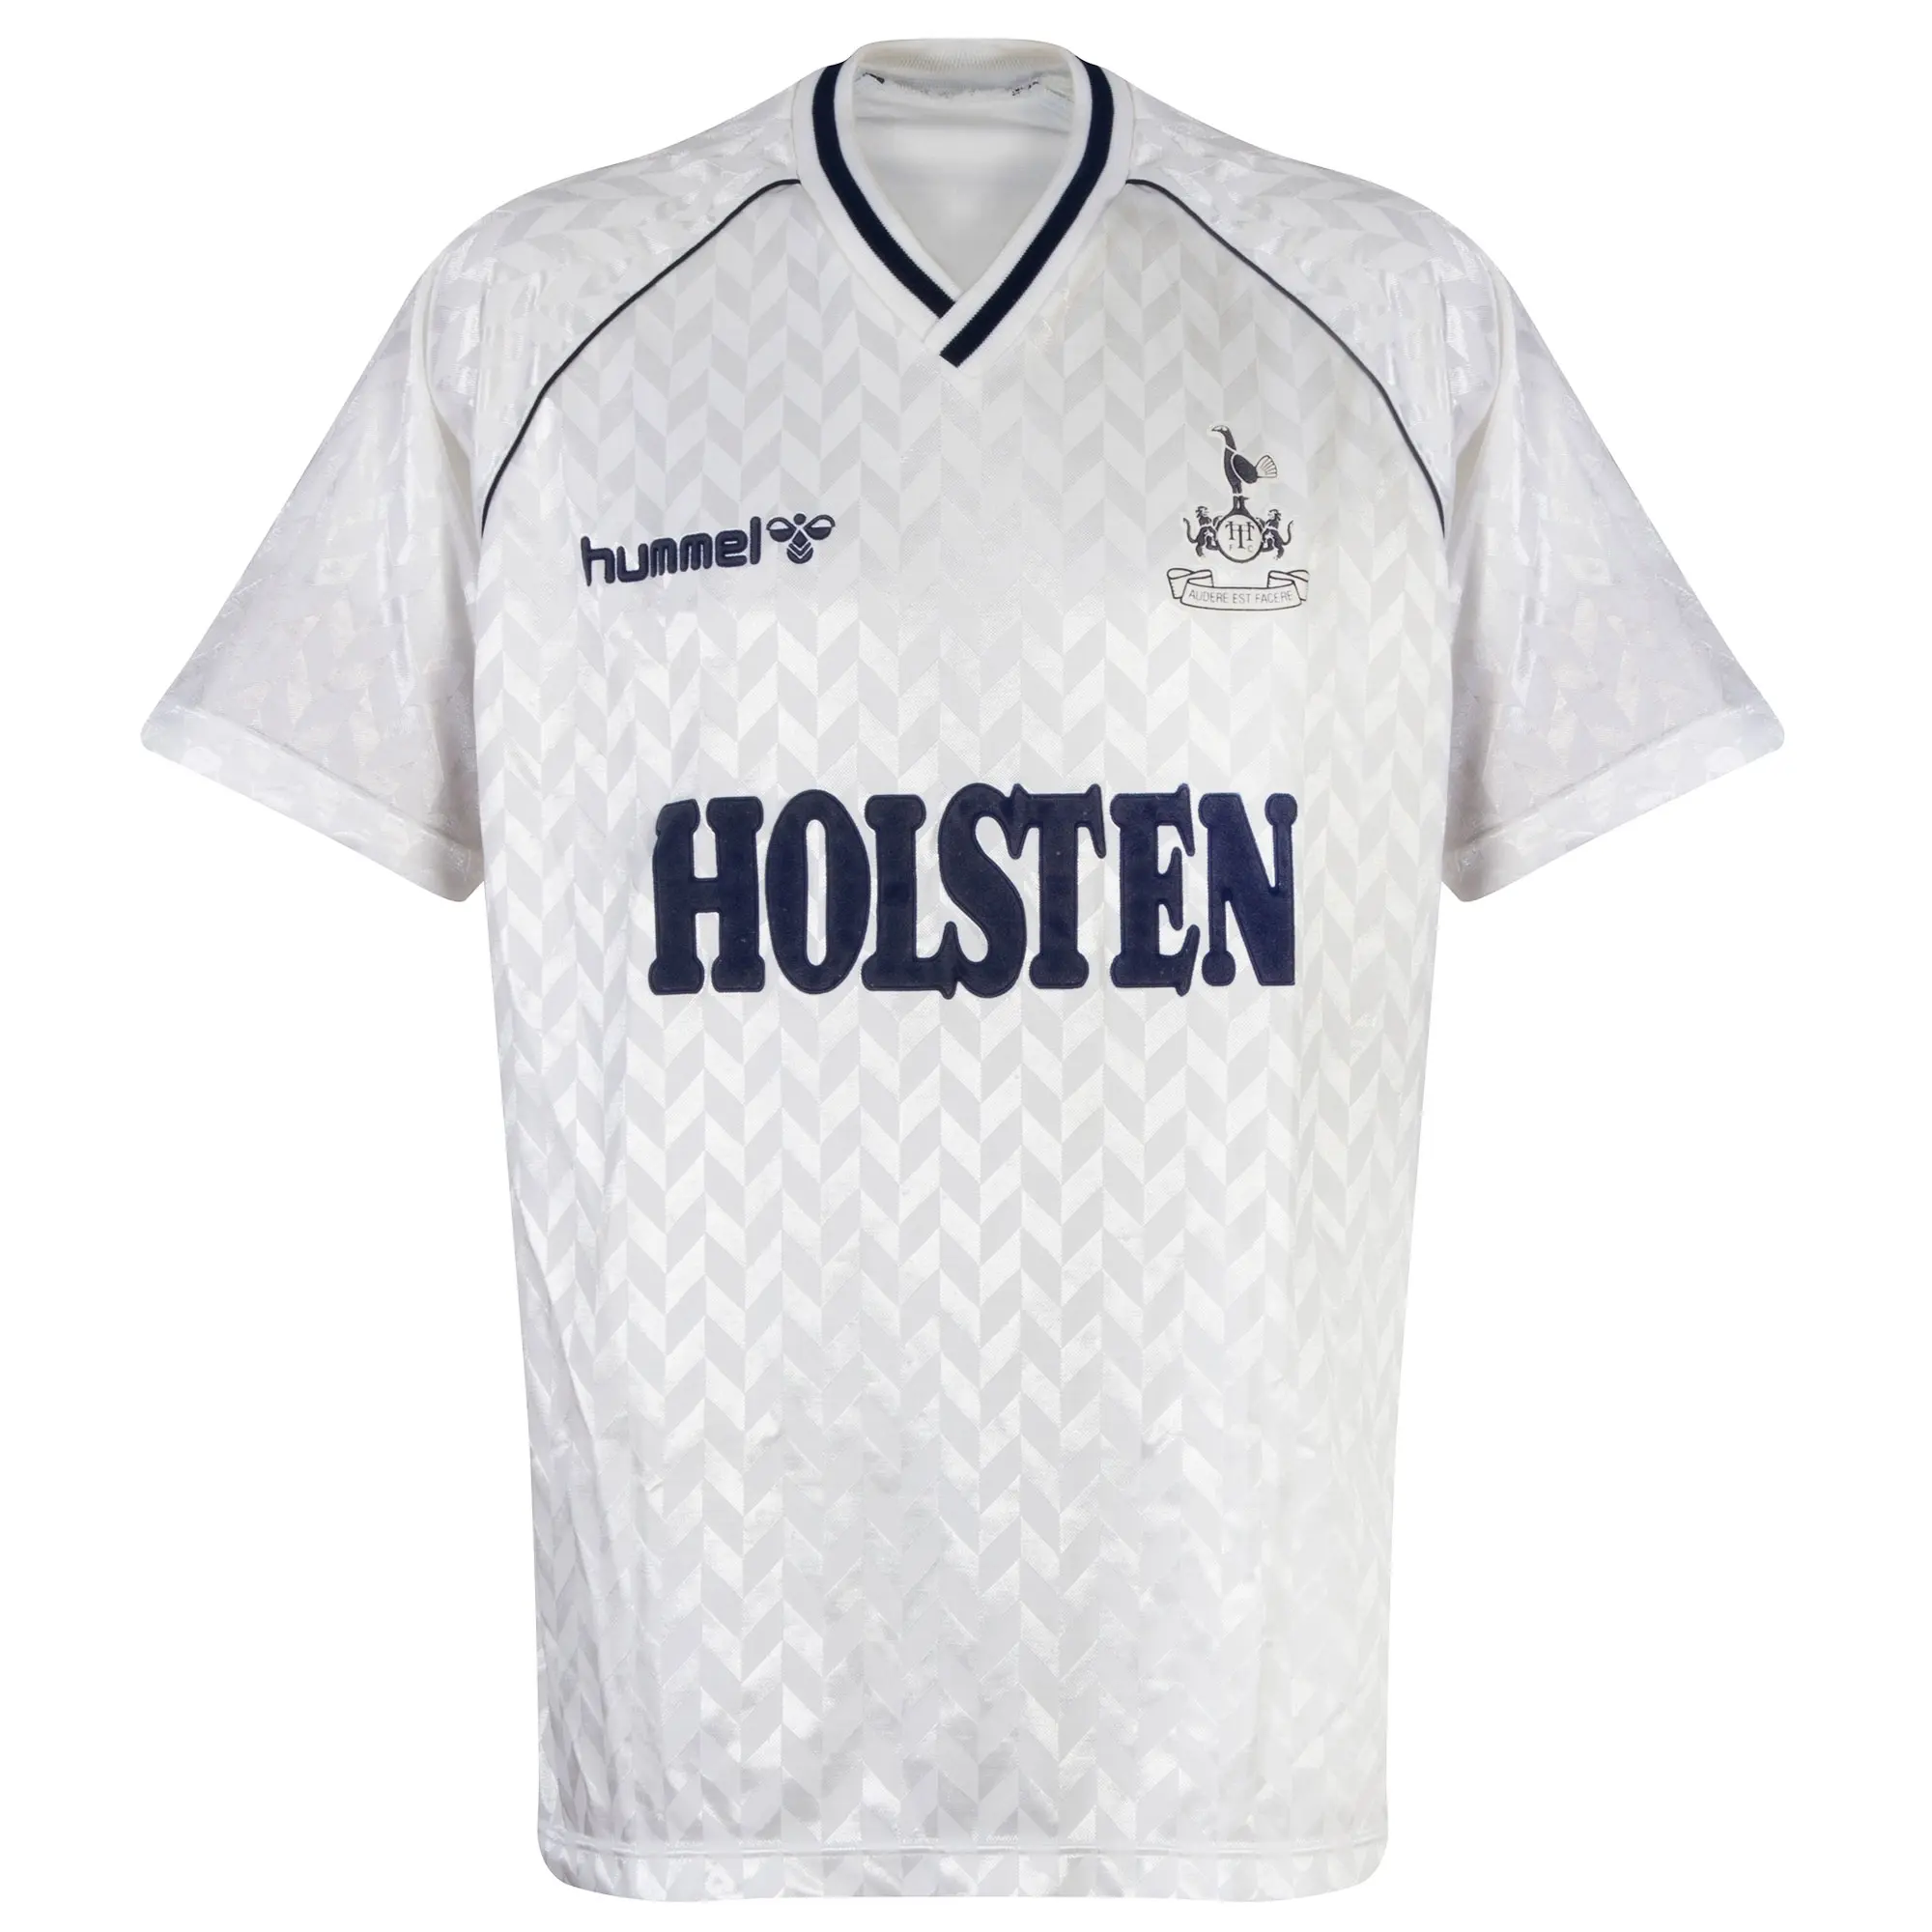 Hummel Tottenham Hotspur Mens SS Home Shirt 1987/88